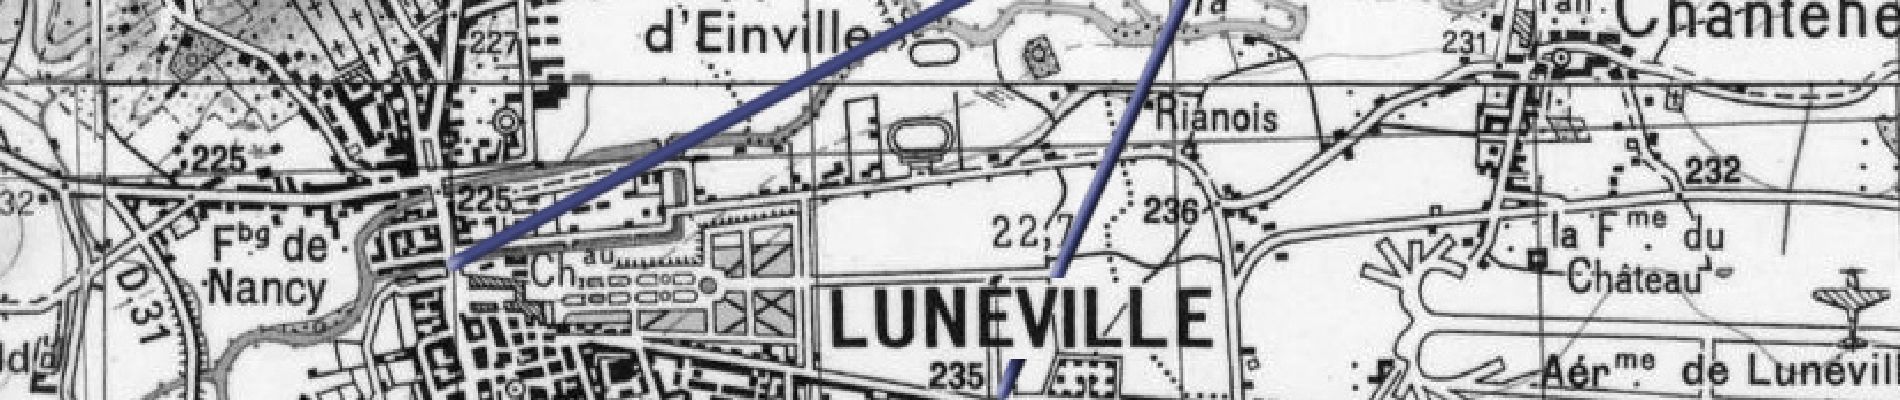 Punto de interés Lunéville - Lunéville 01 - Photo